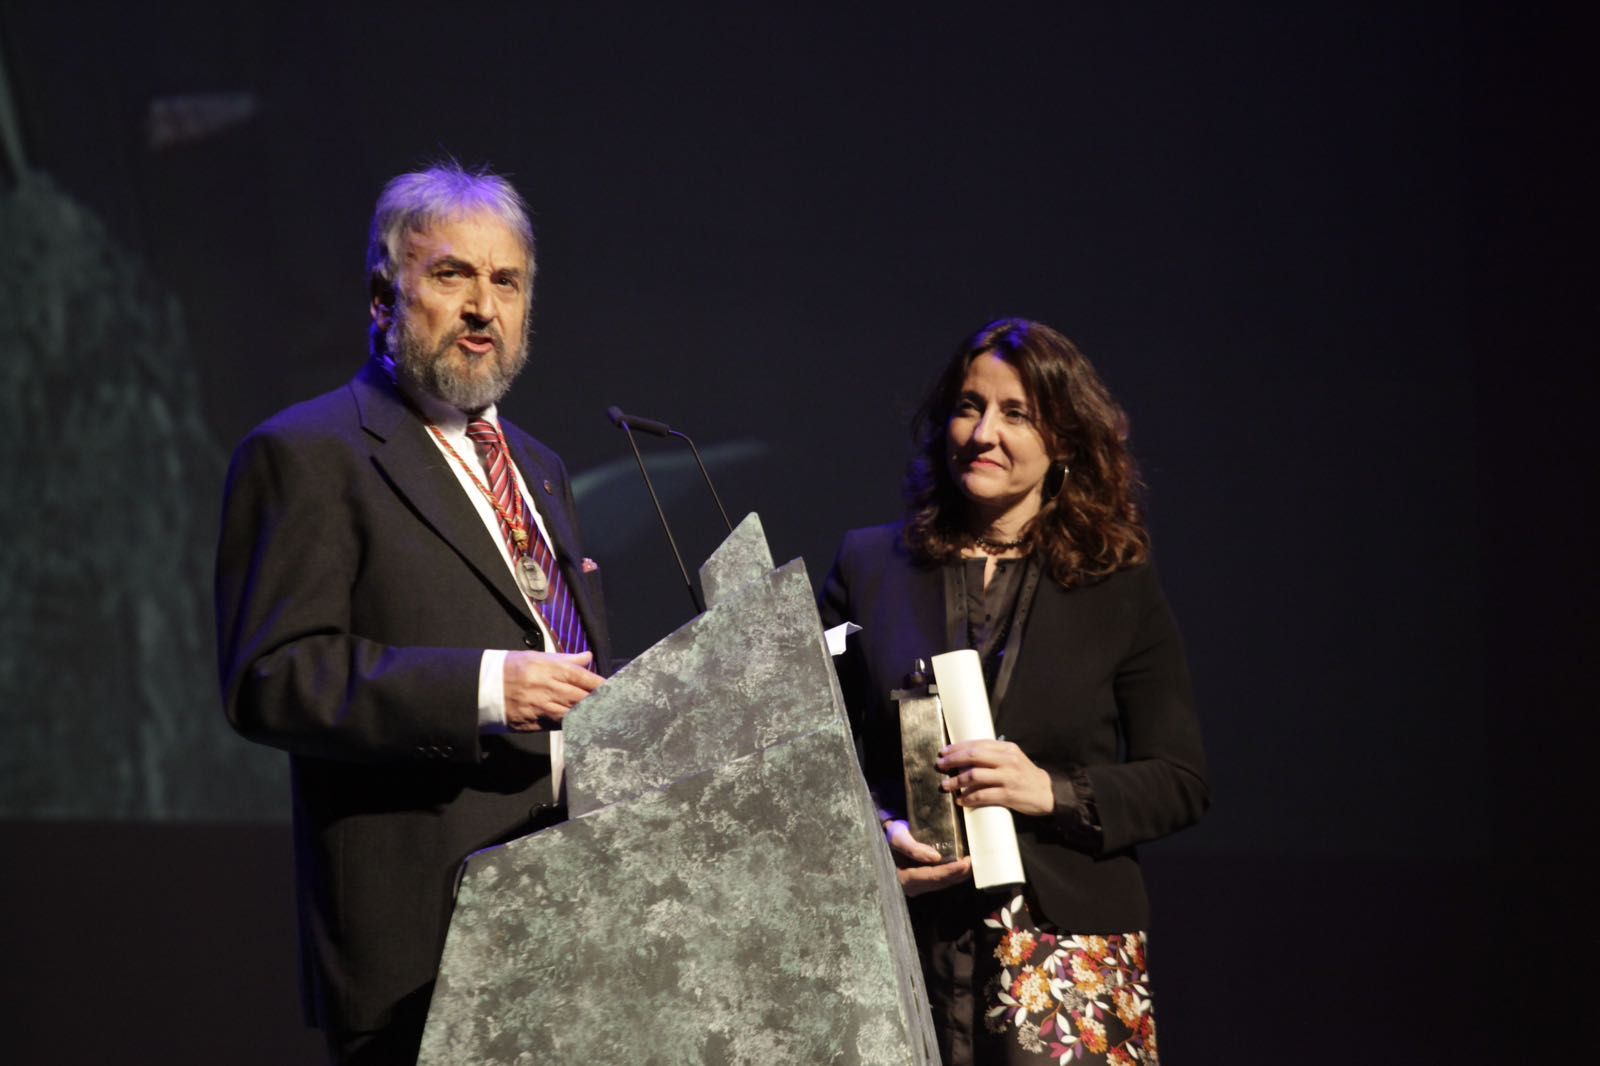 Josep Canals, Premi extraordinari. FOTO: Artur Ribera